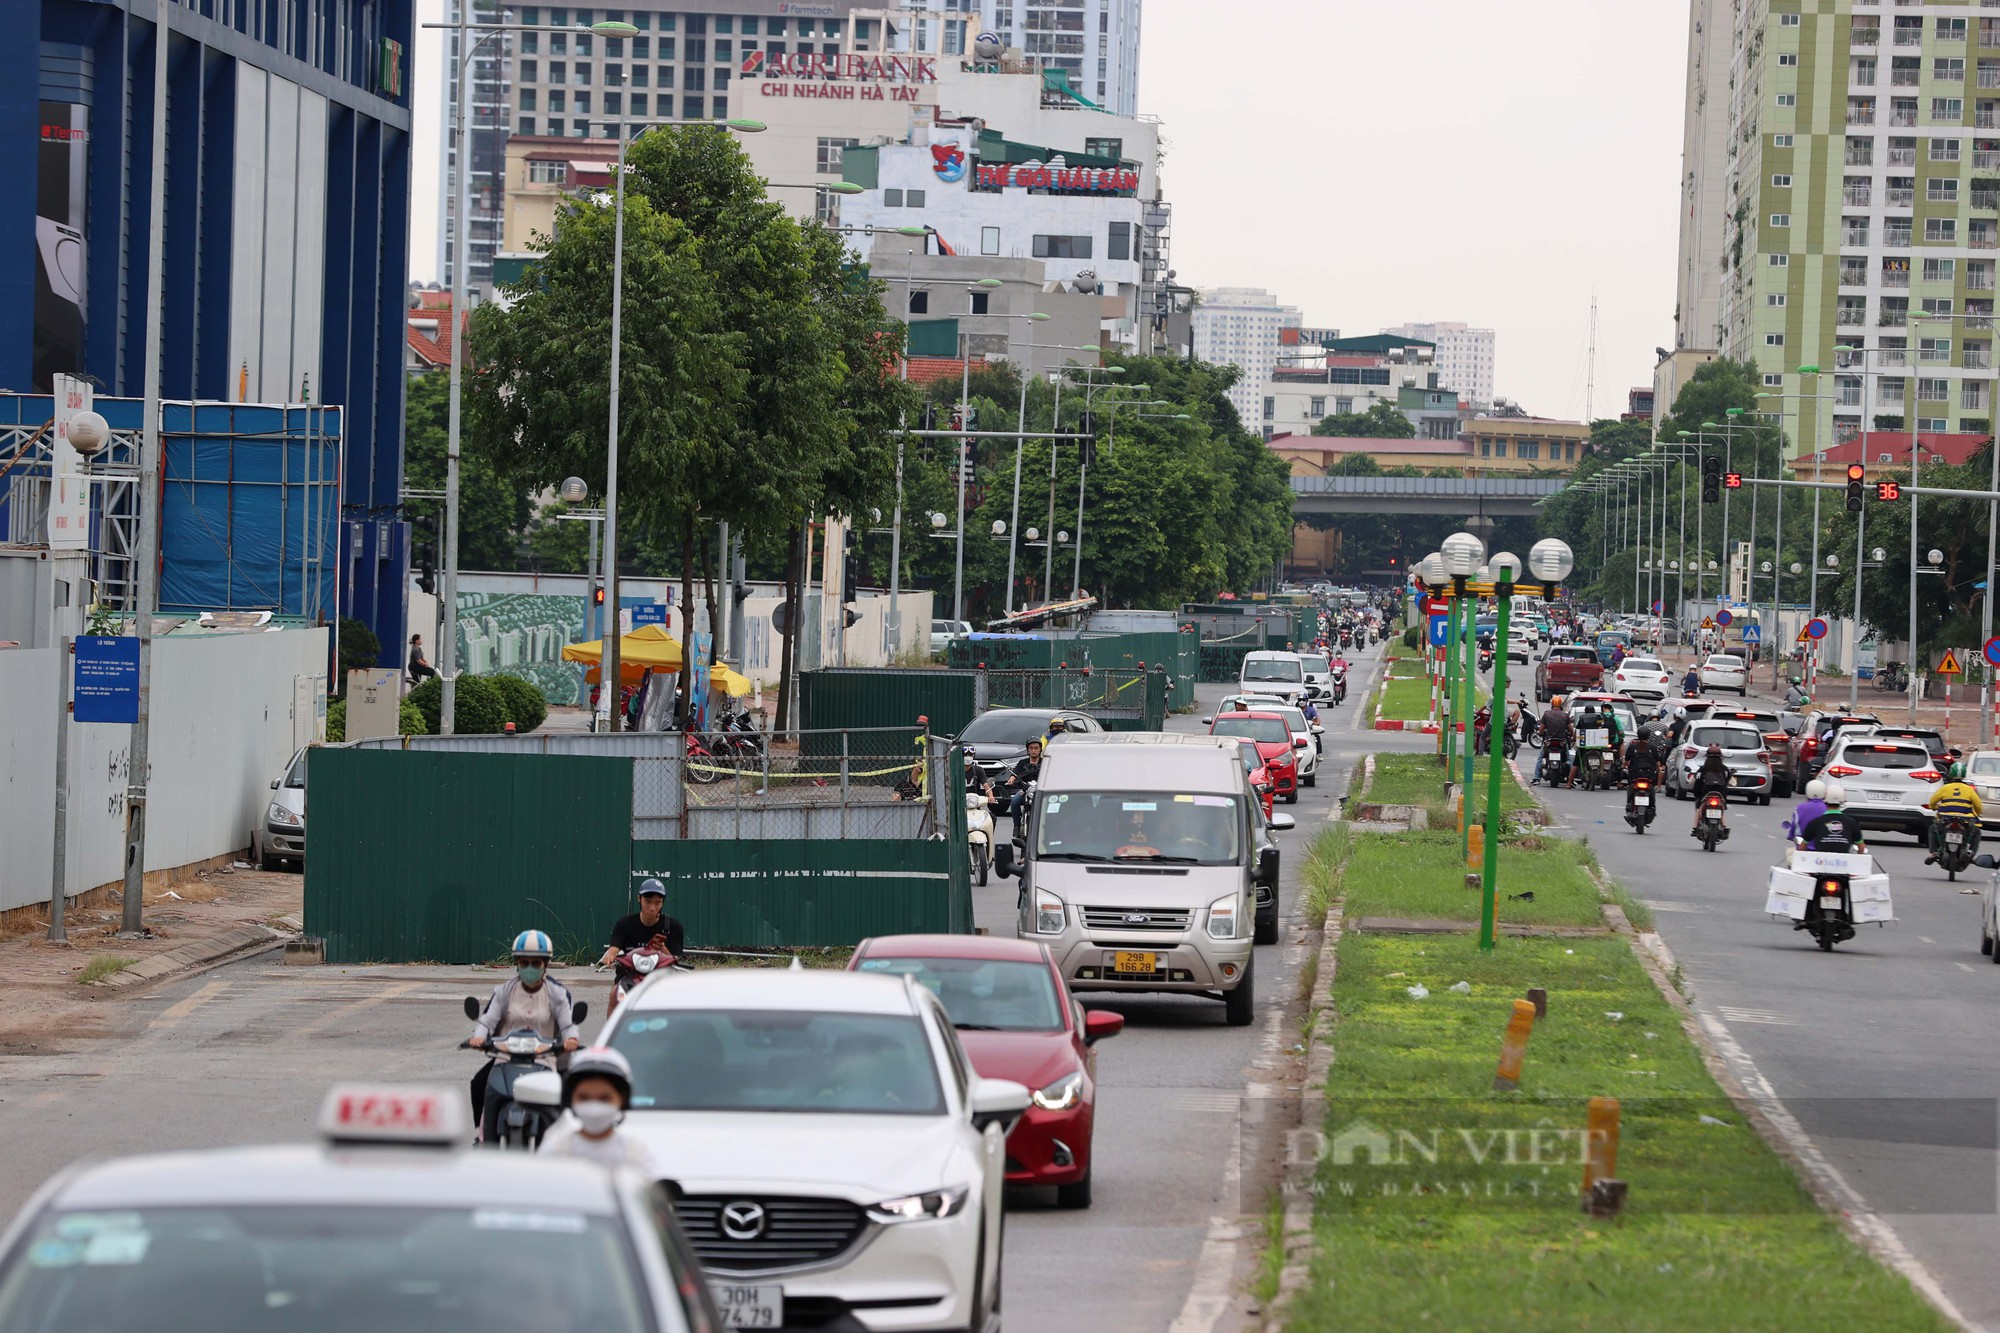 Độc lạ ở Hà Nội: Con đường chỉ dài hơn một cây số nhưng có đến 8 lô cốt án ngữ - Ảnh 1.